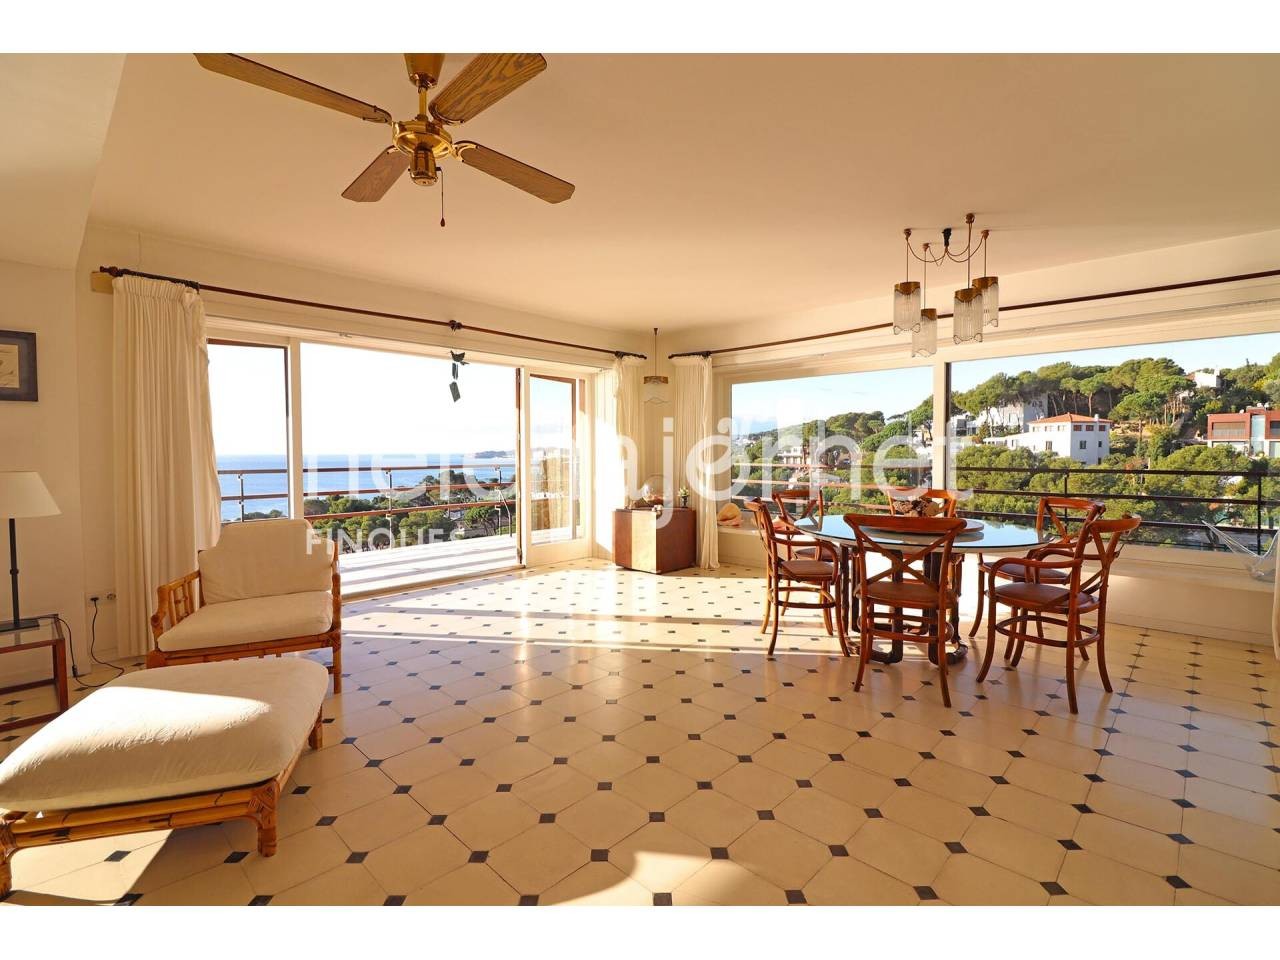 Appartement T3 exceptionnel avec vue sur la mer situé dans le bâtiment Eden Mar dans le quartier Torre Valentina. - 250